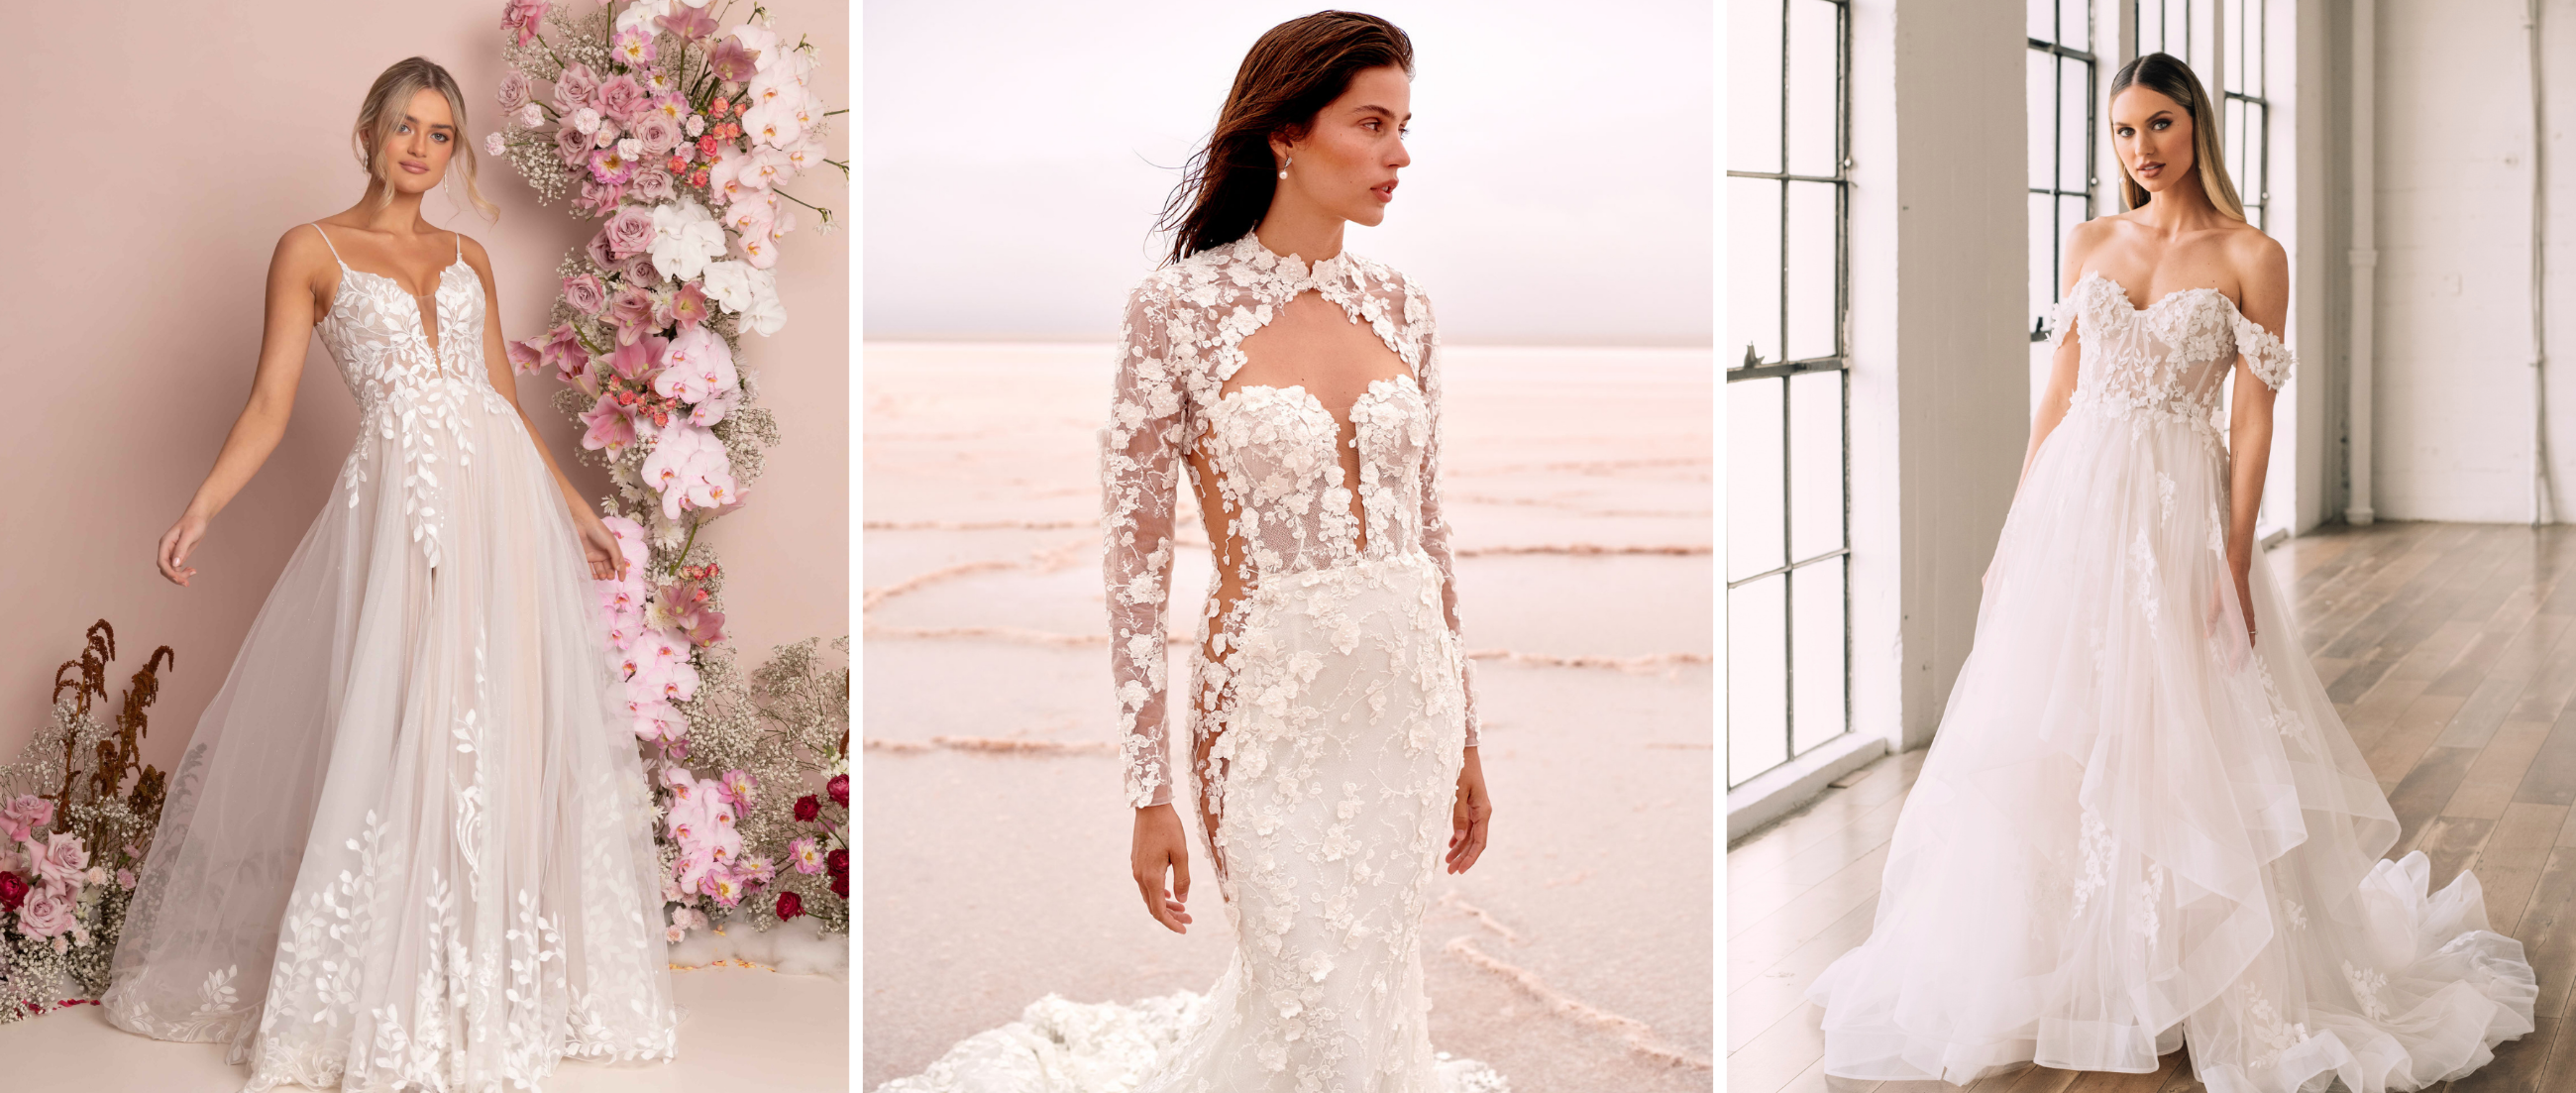 Visit Romantic Lace Wedding Dresses details page